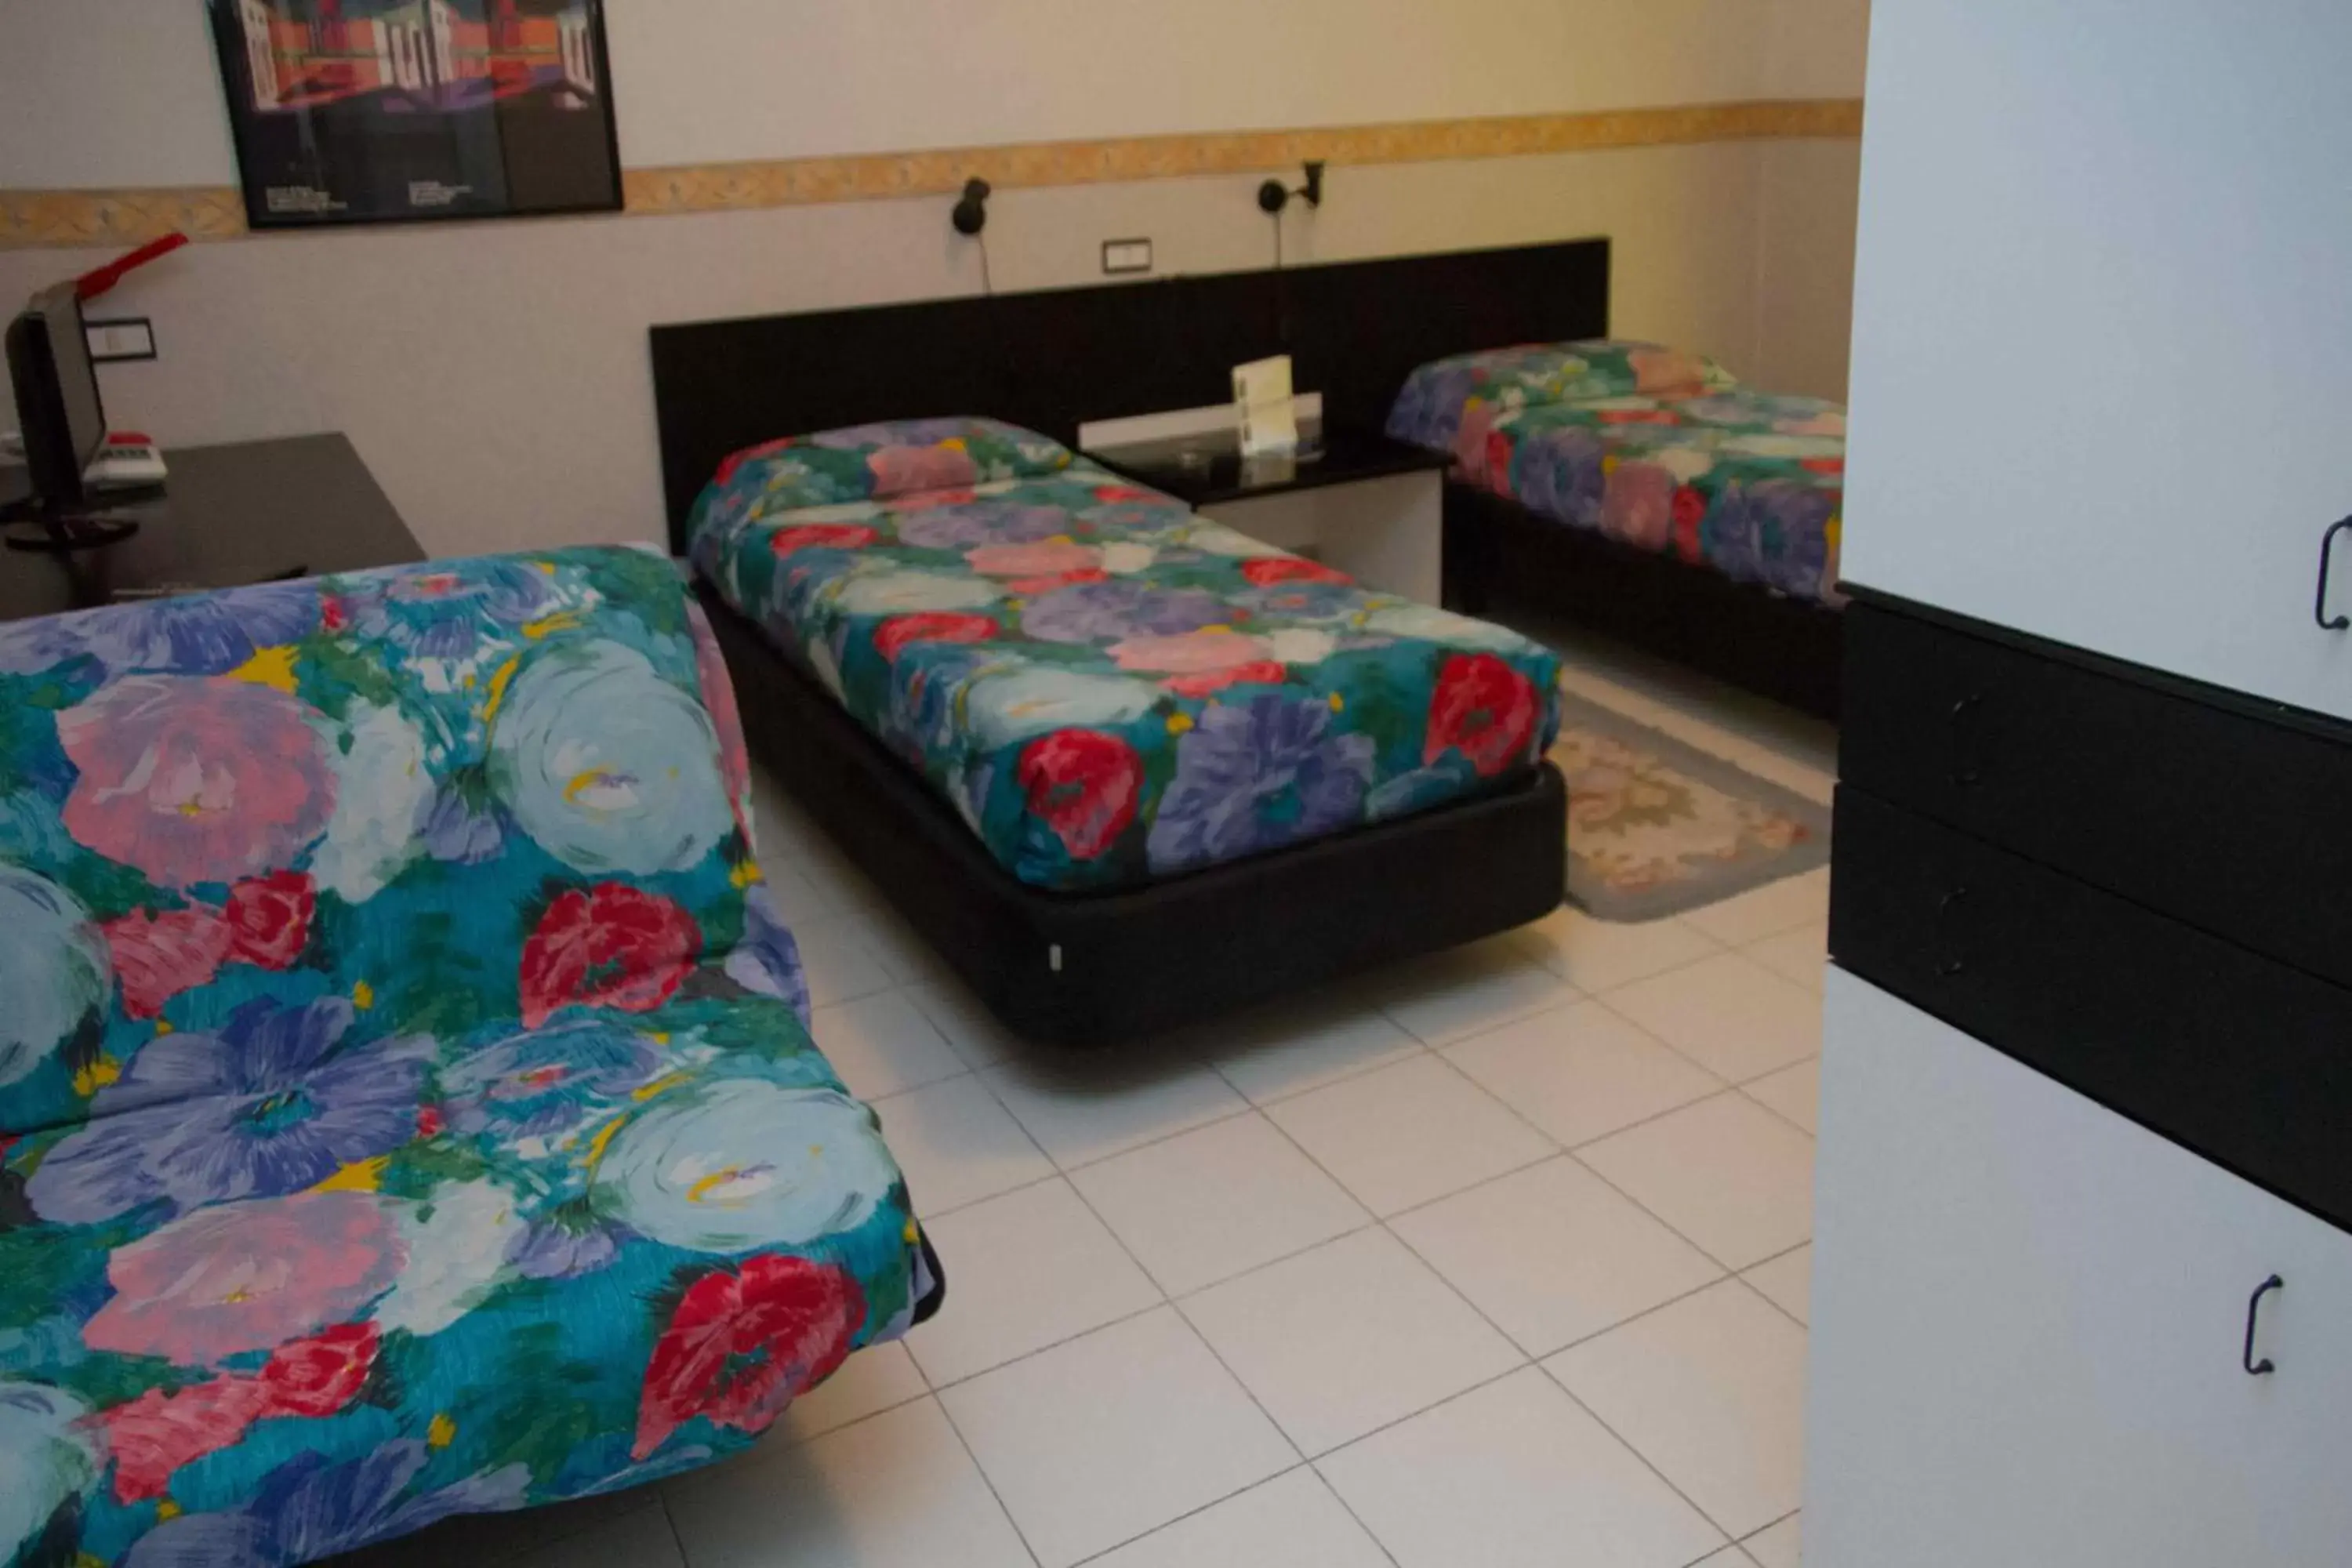 Bed, Room Photo in Hotel Letizia